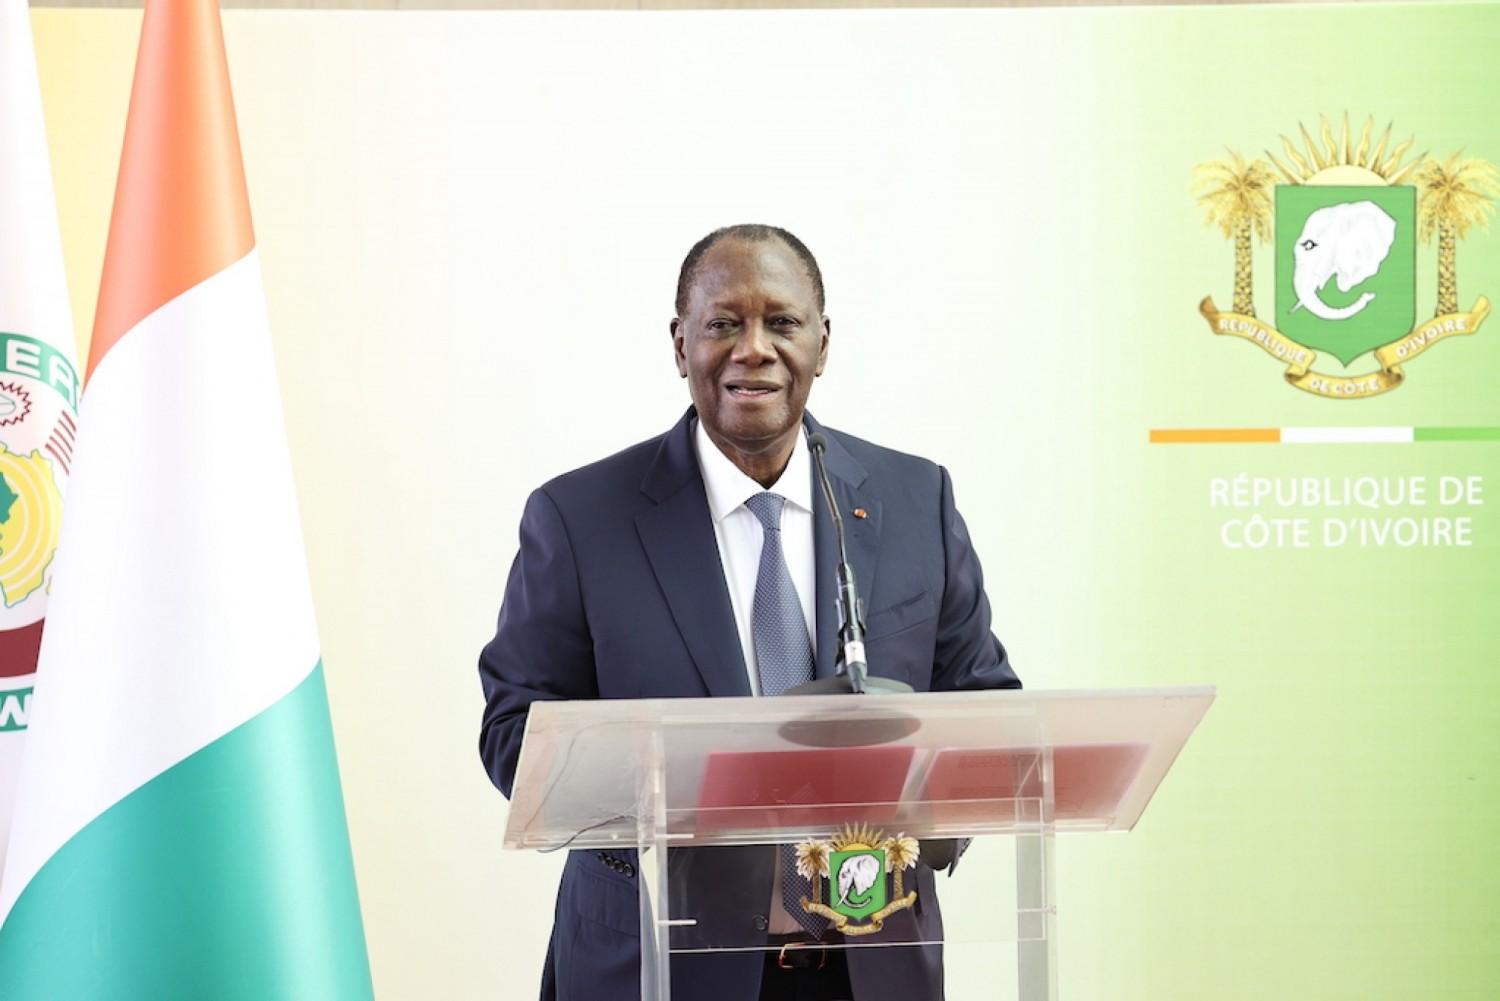 Côte d'Ivoire :  Cherté de la vie, de retour, Ouattara annonce une réunion avec le groupement des consommateurs pour essayer de prendre des mesures